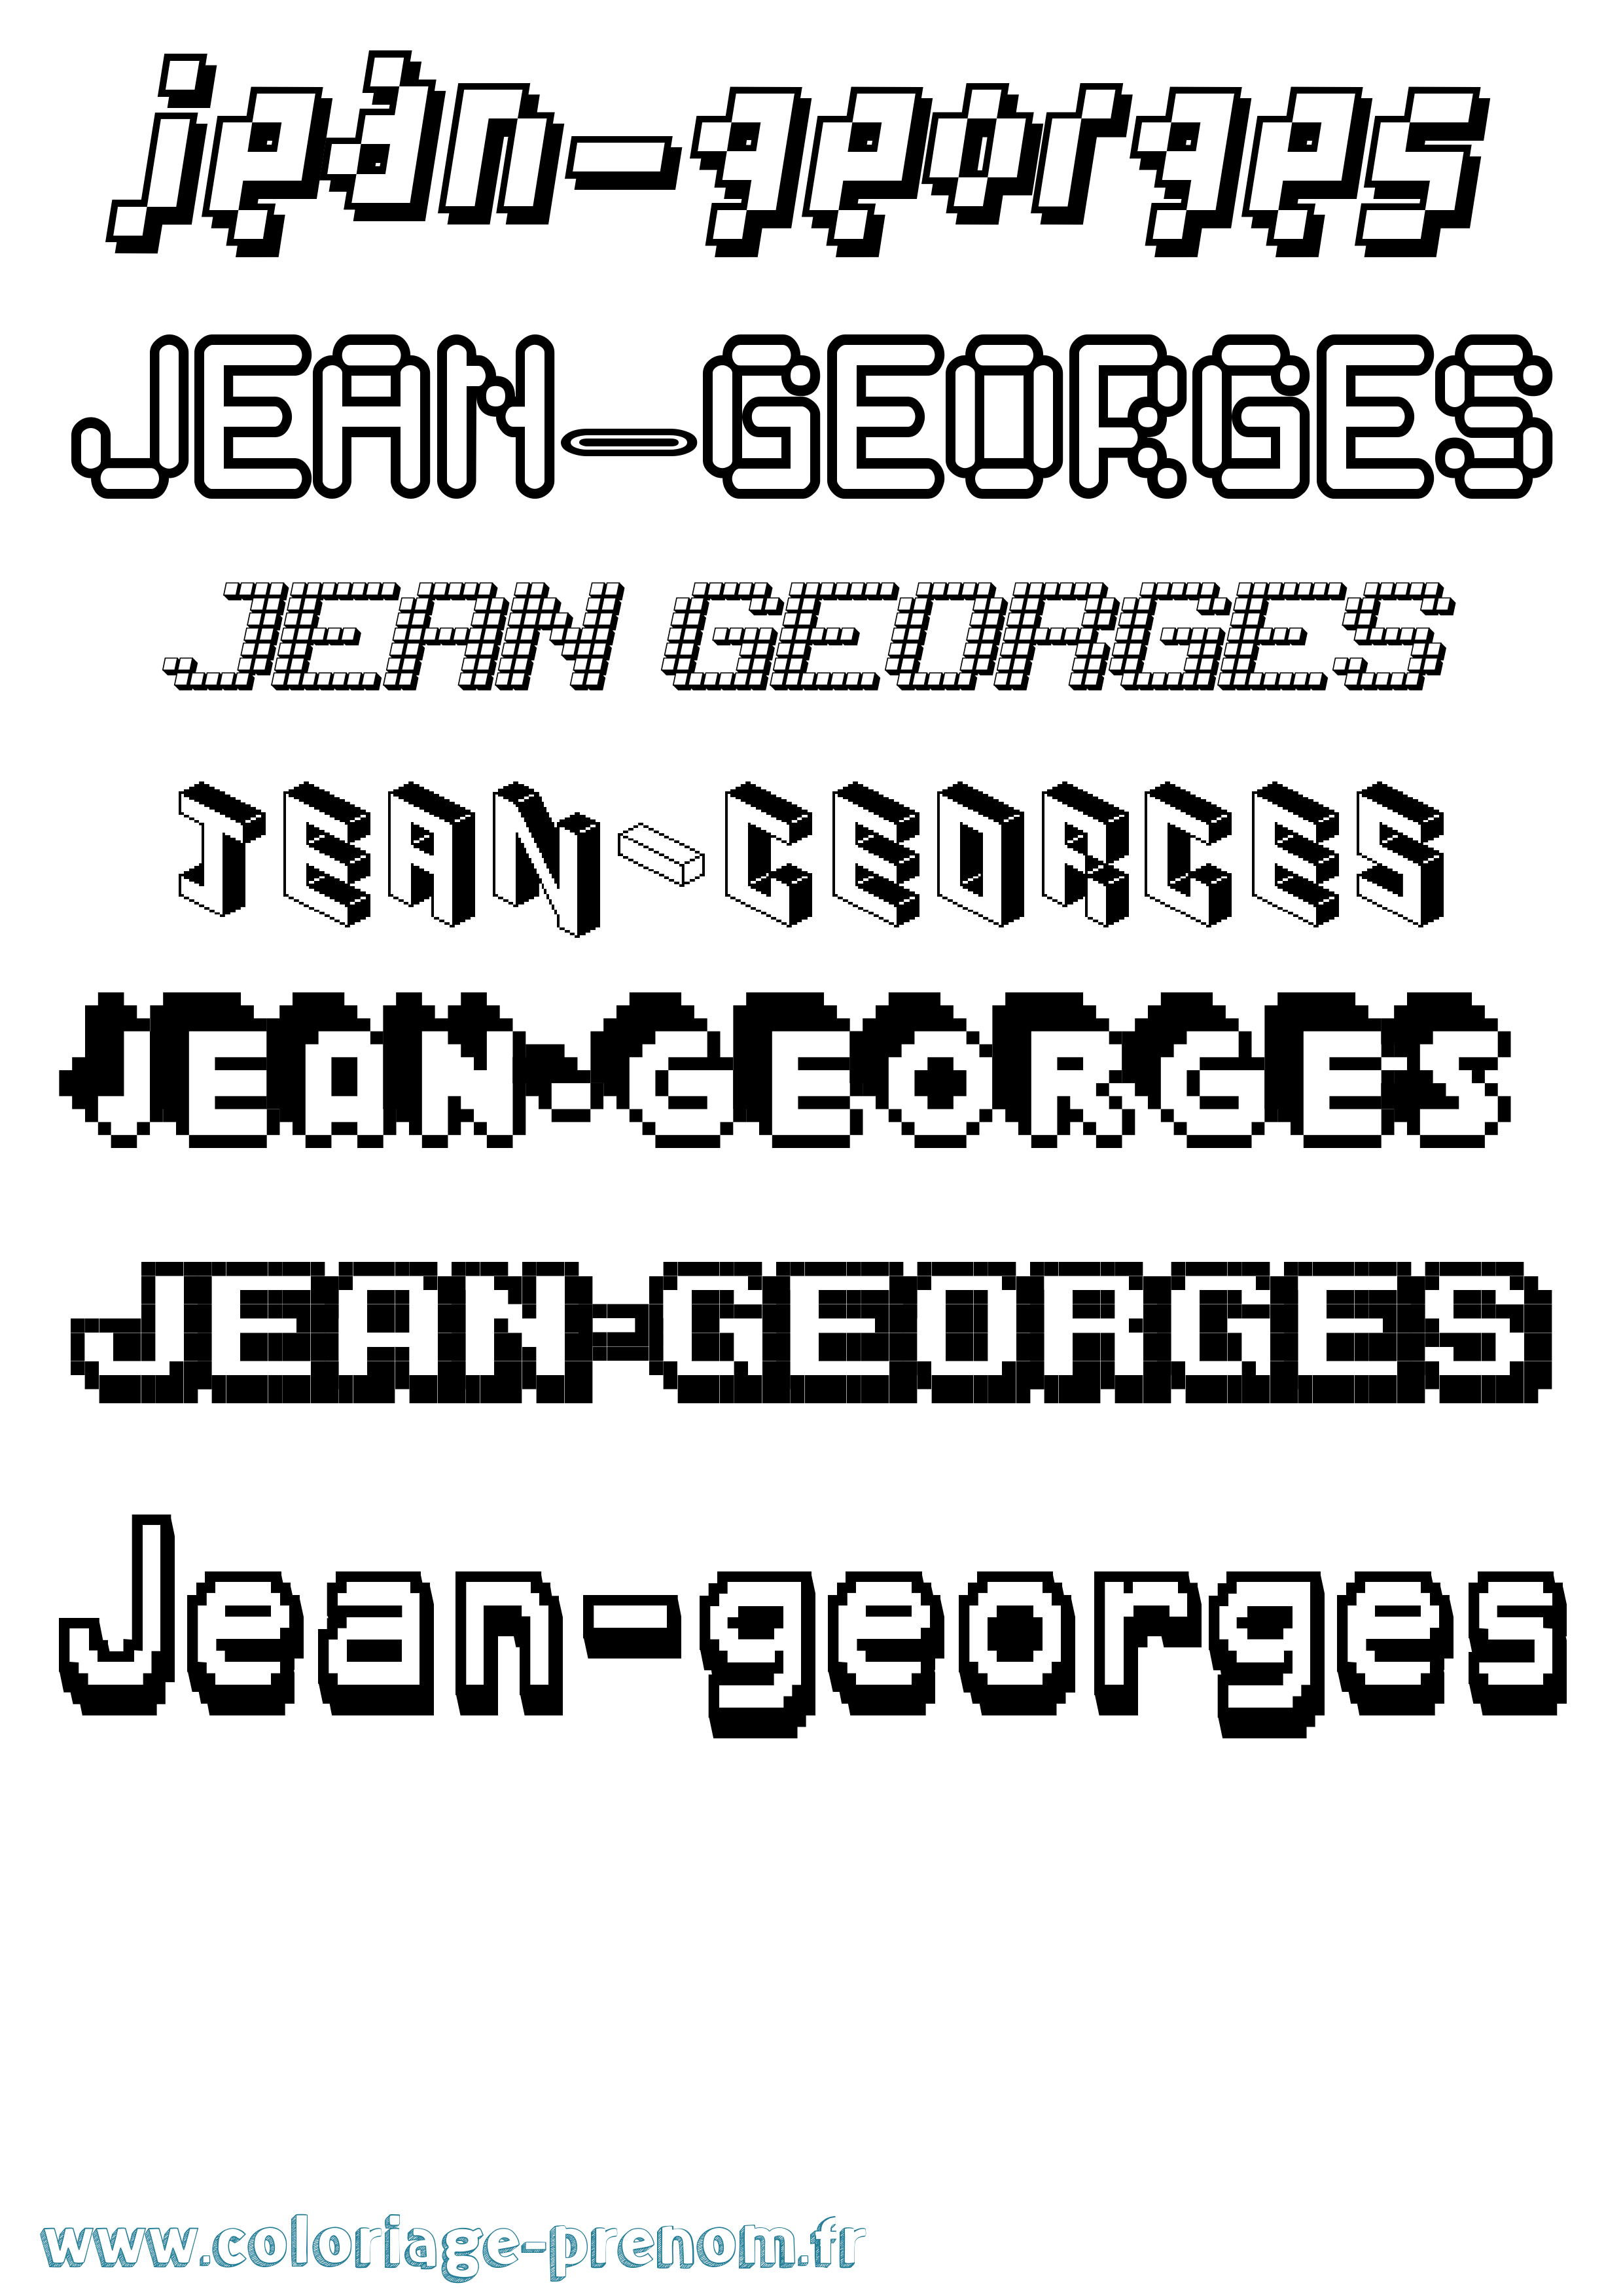 Coloriage prénom Jean-Georges Pixel